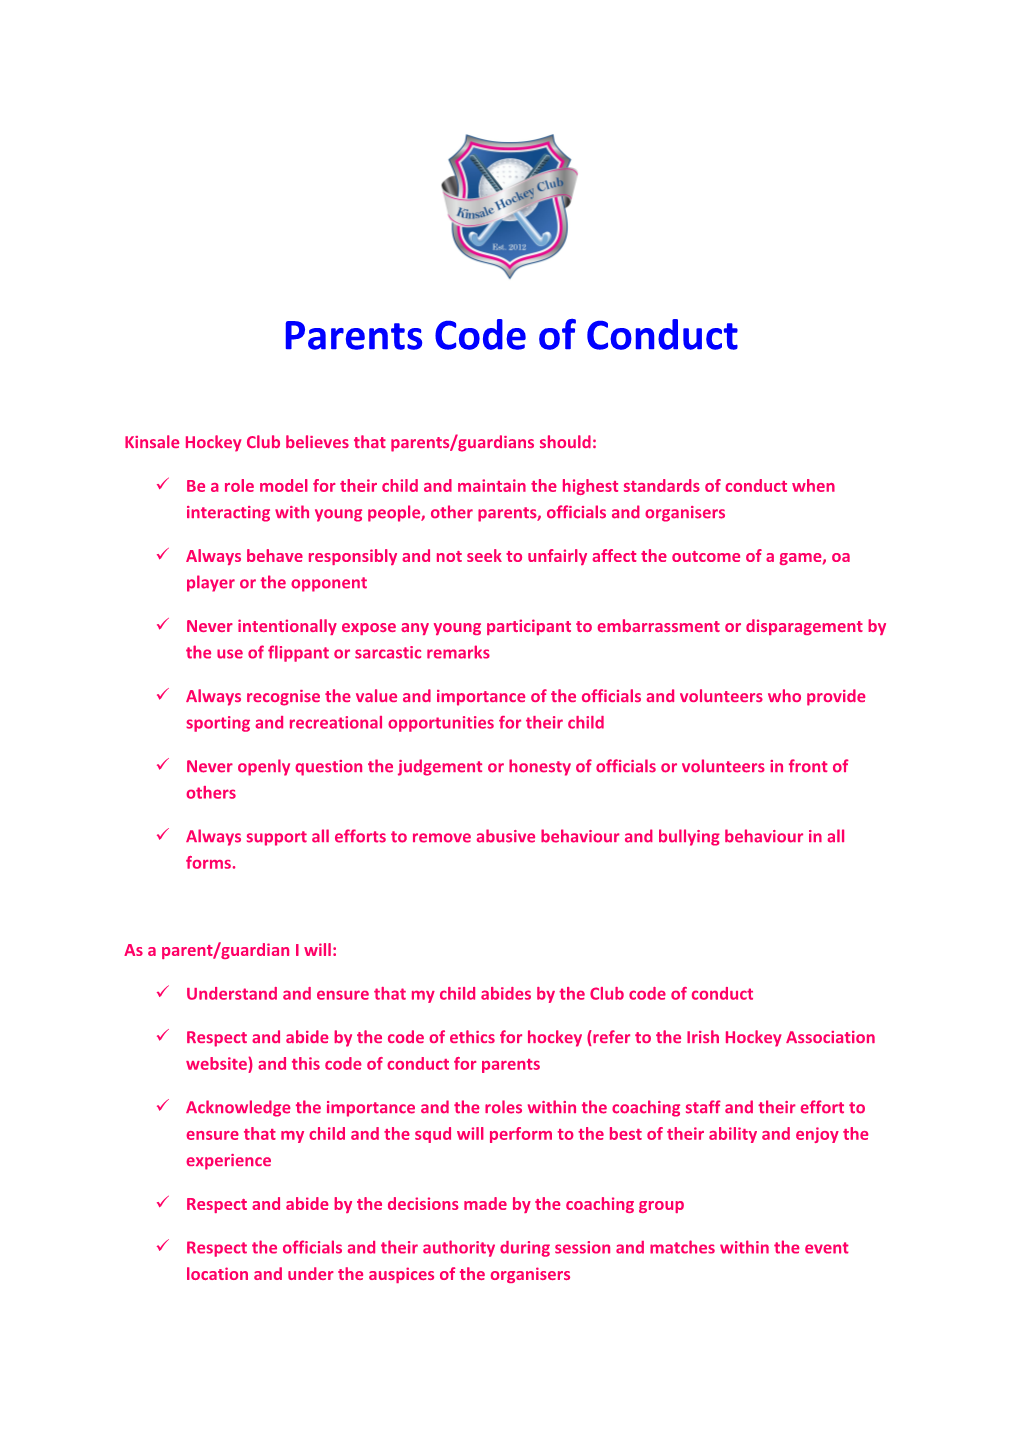 Kinsale Hockey Club Believes That Parents/Guardians Should